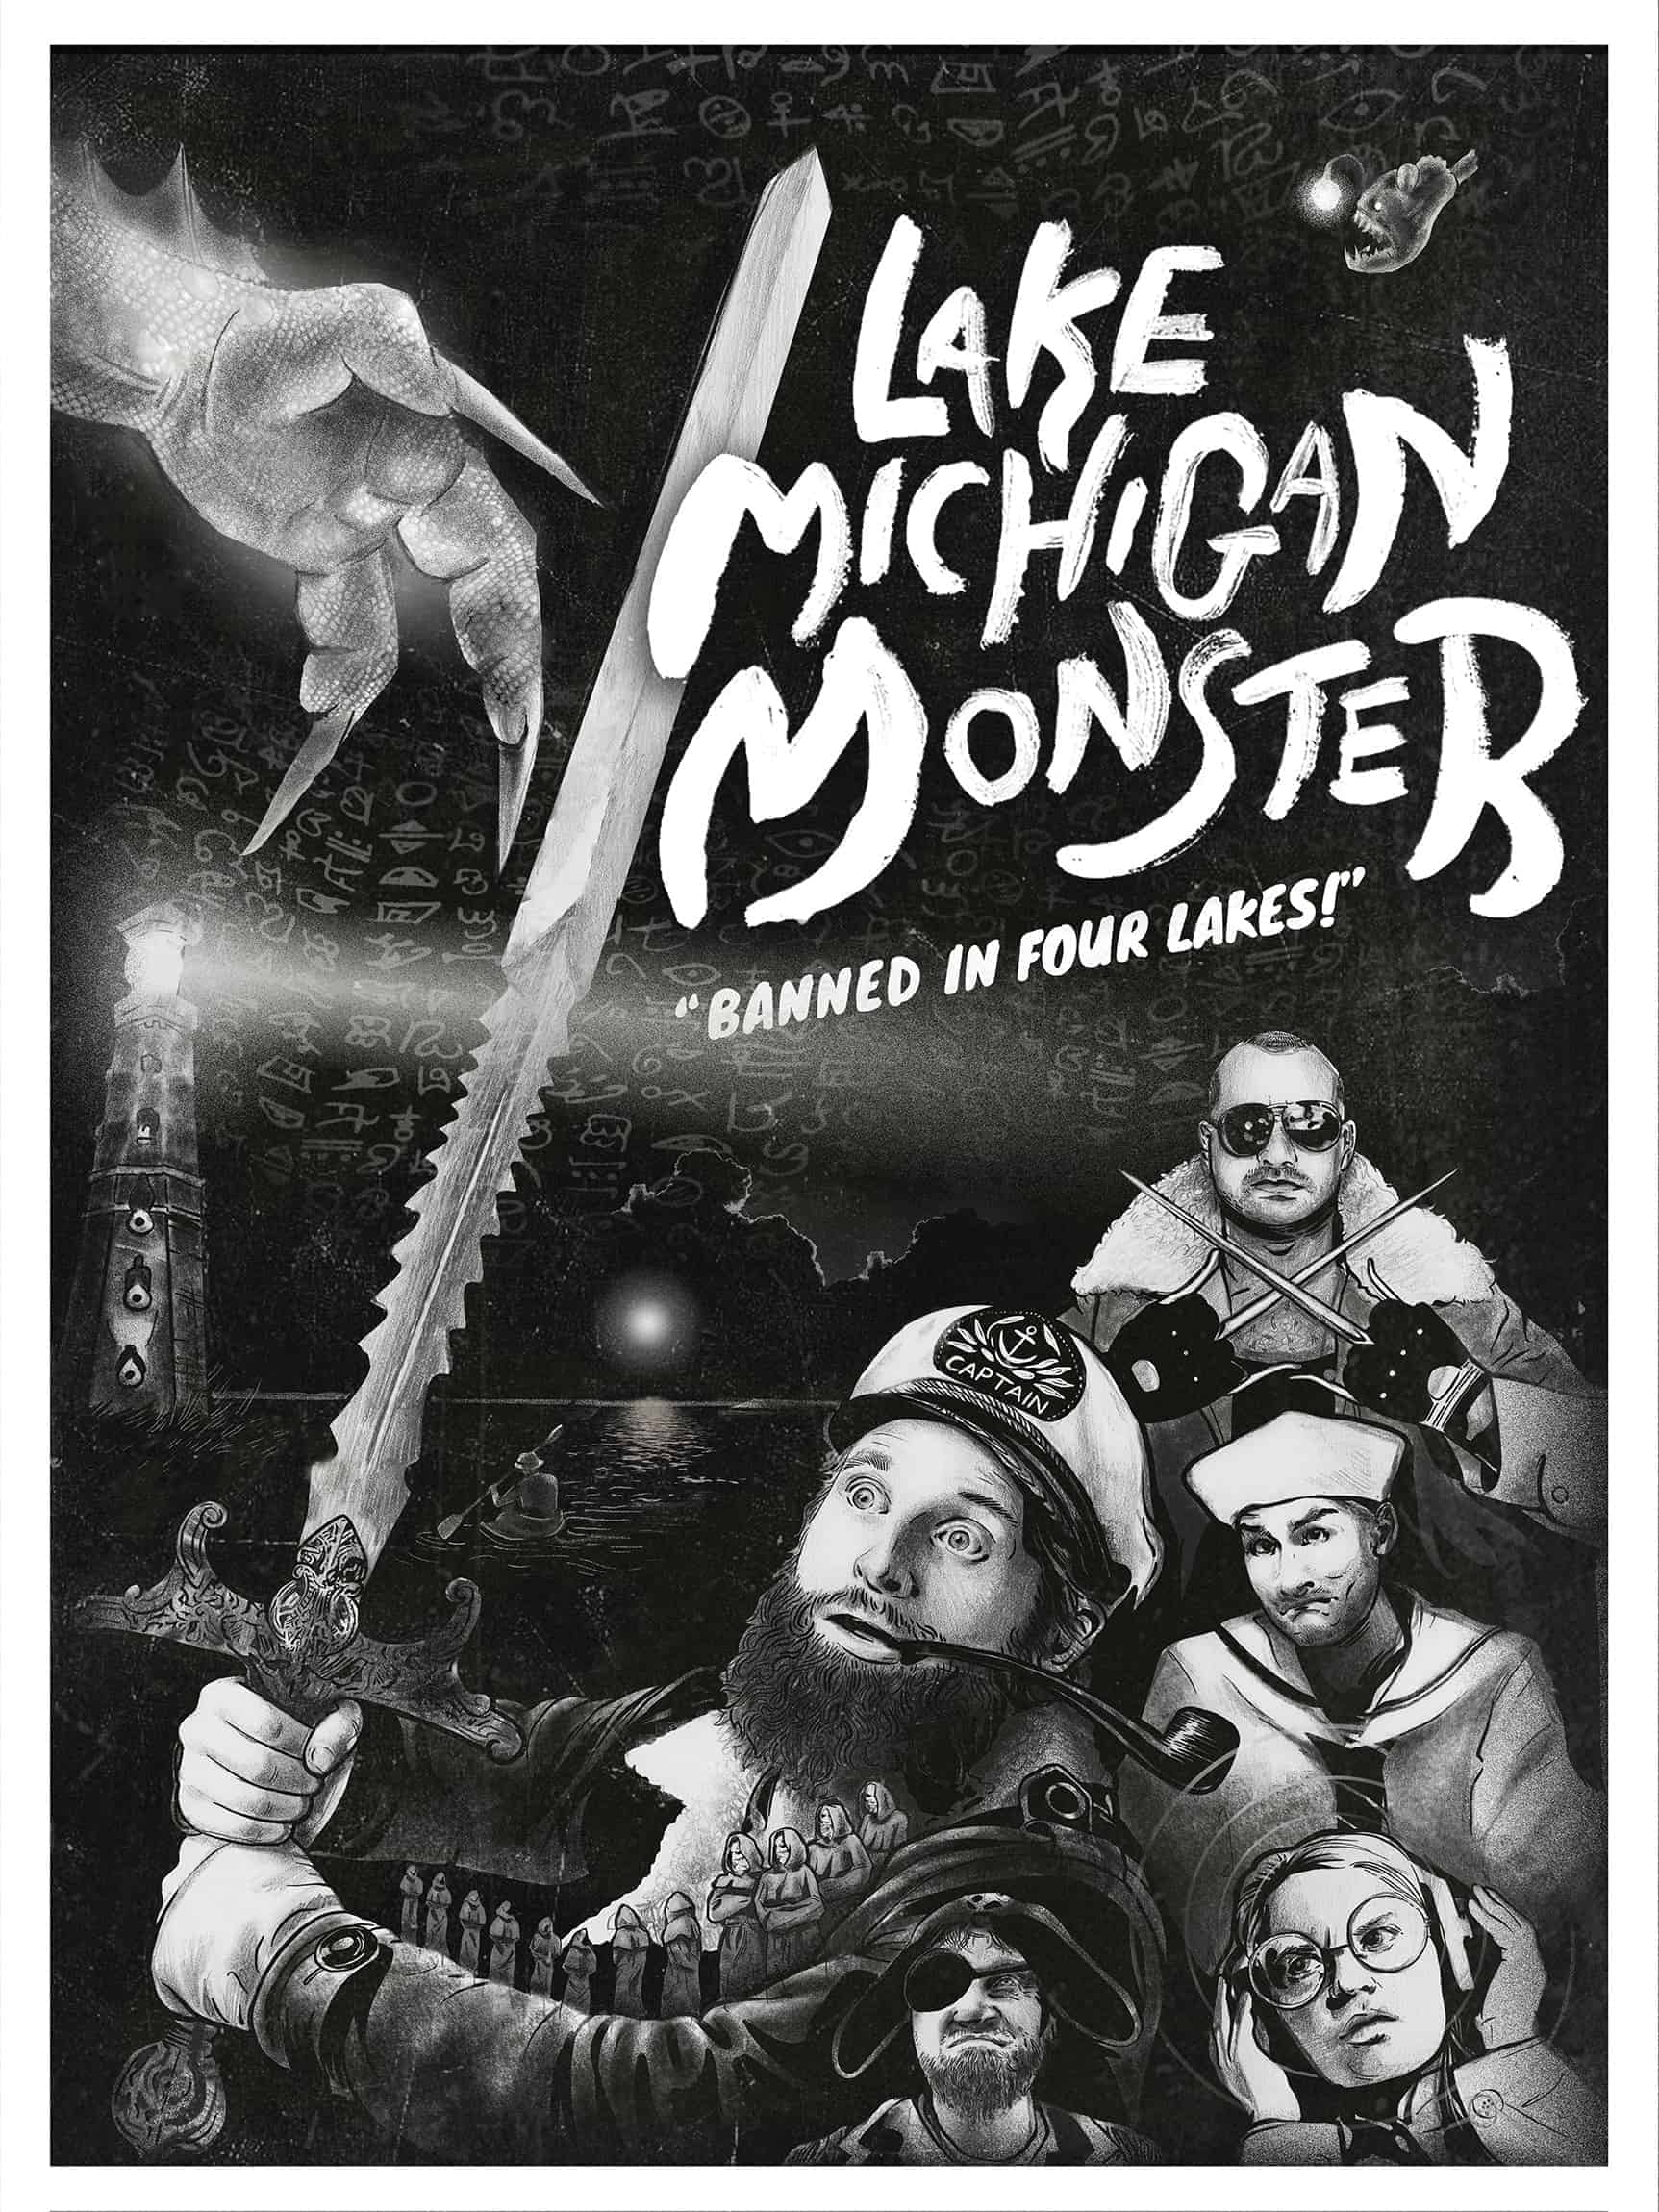 lake michigan monster poster